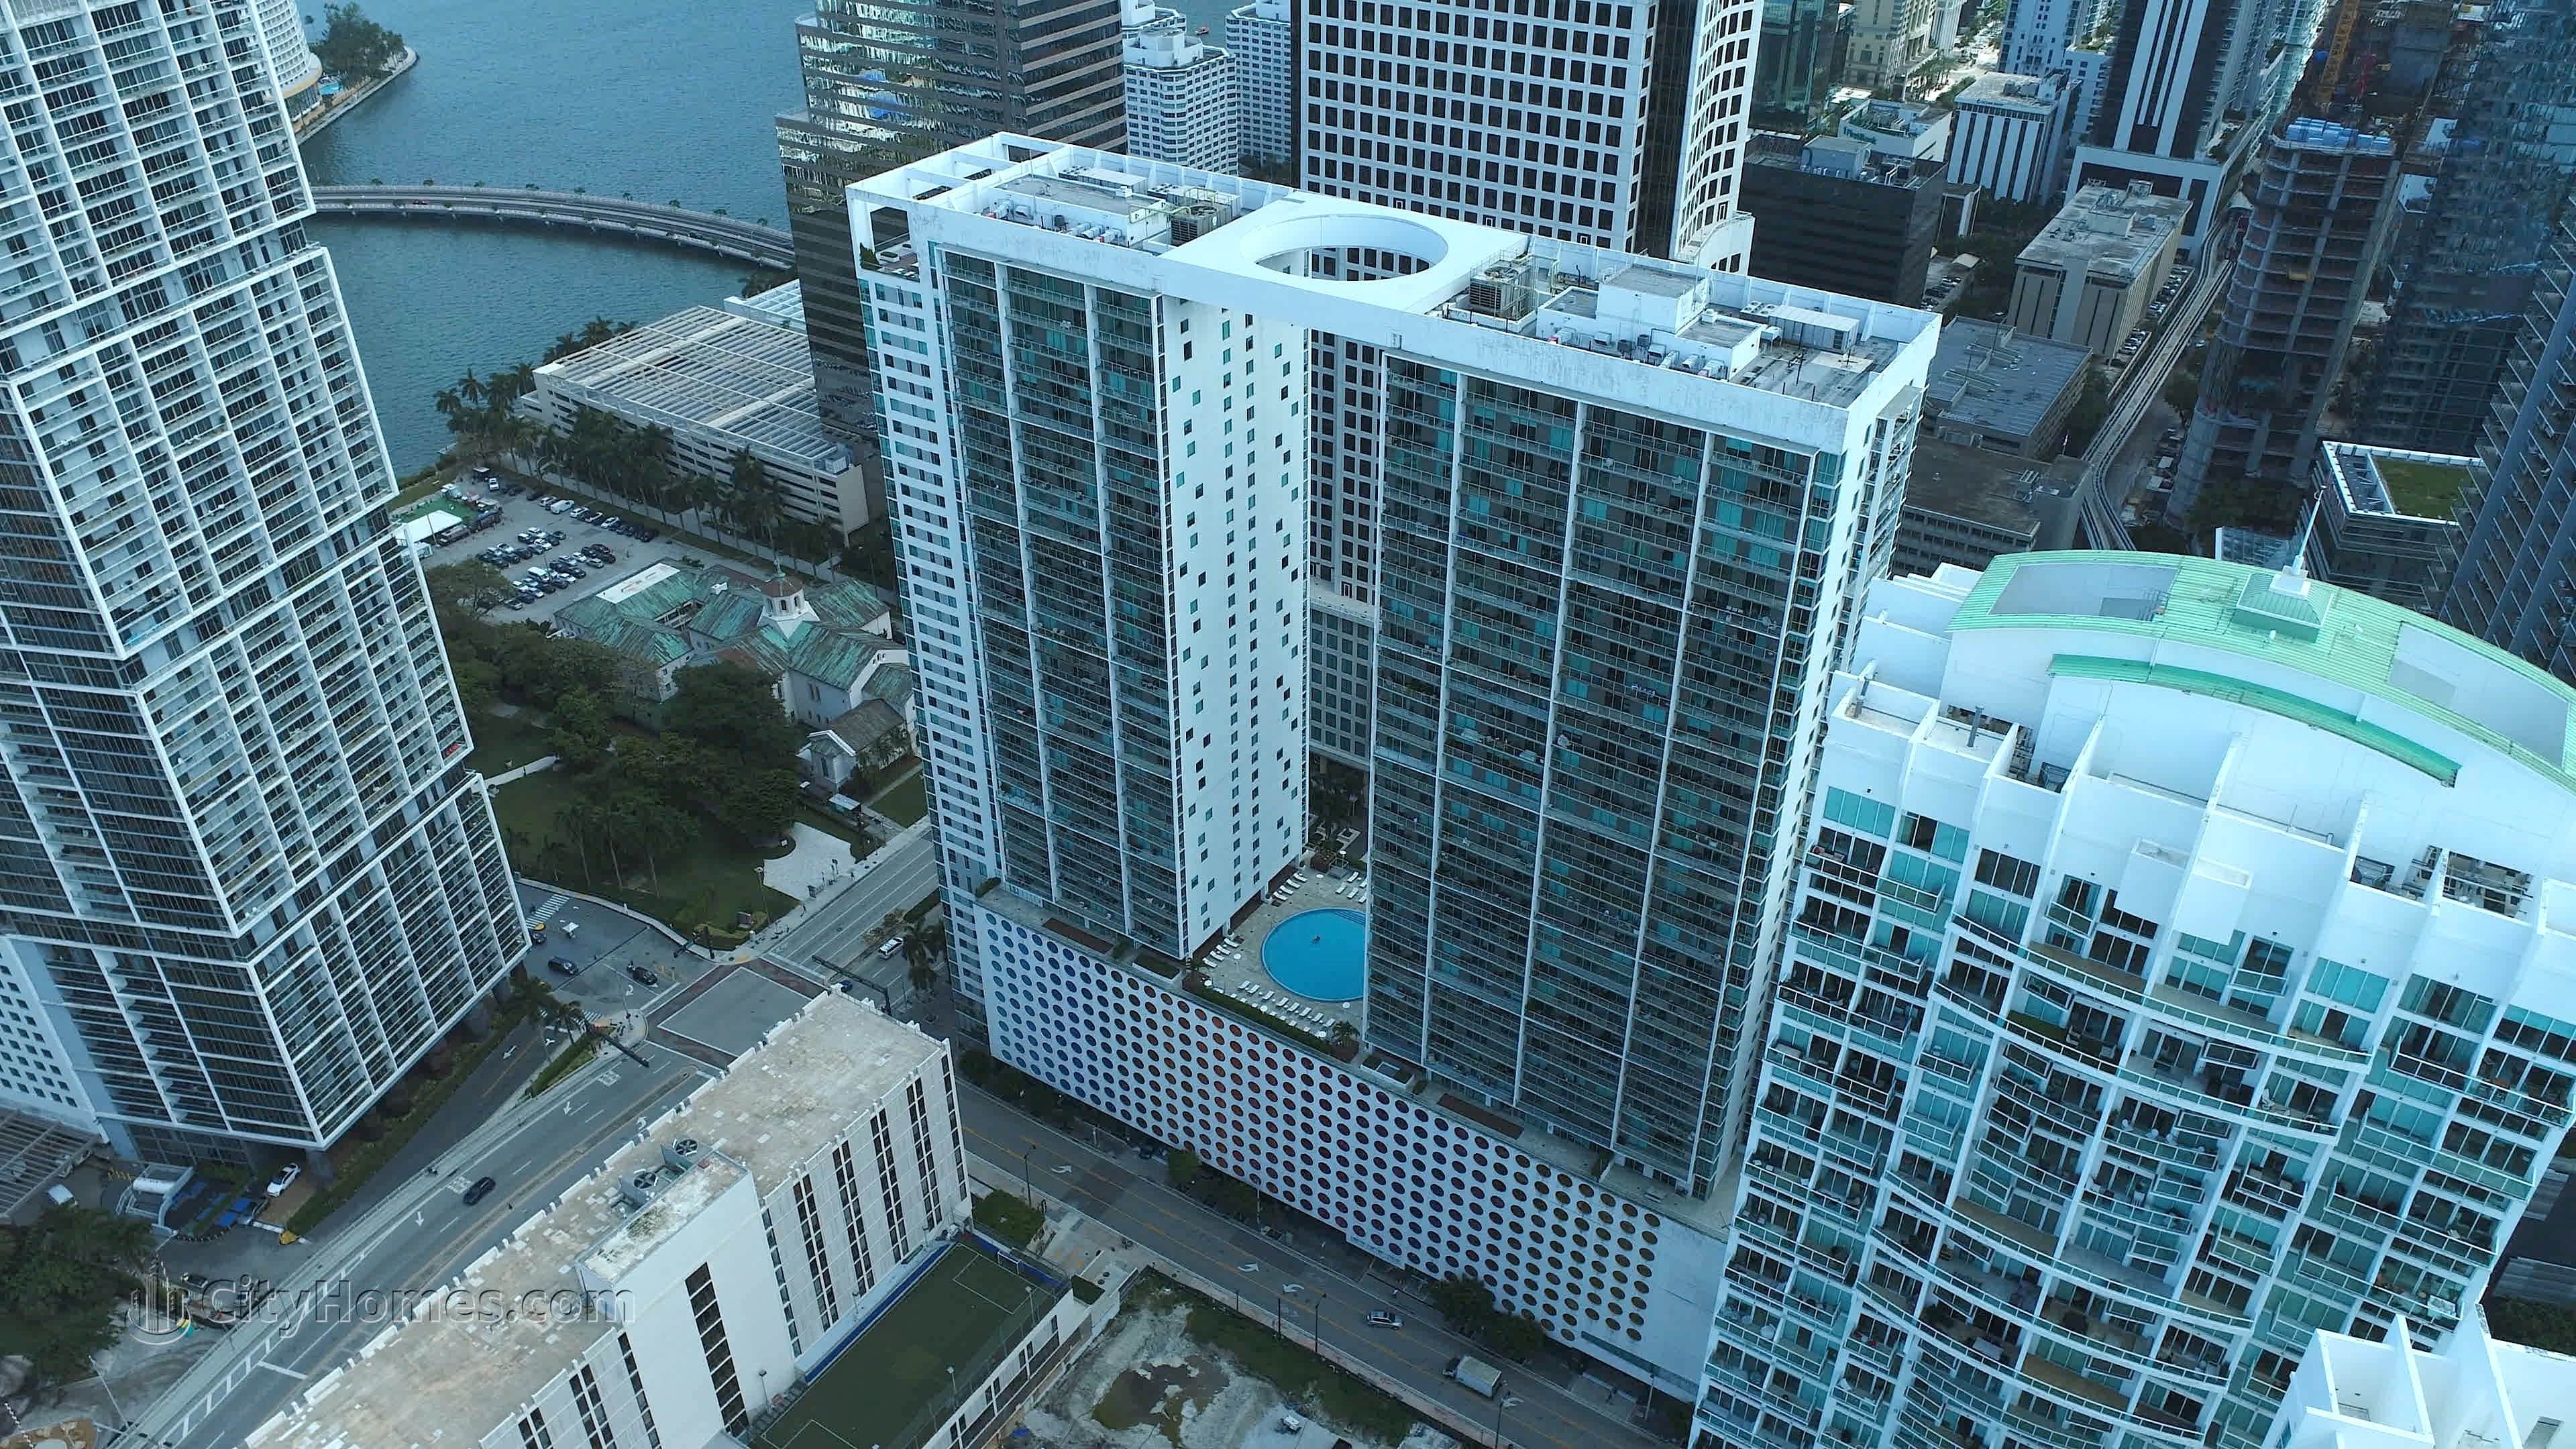 500 Brickell East edificio en 500 Brickell Avenue, Miami, FL 33131